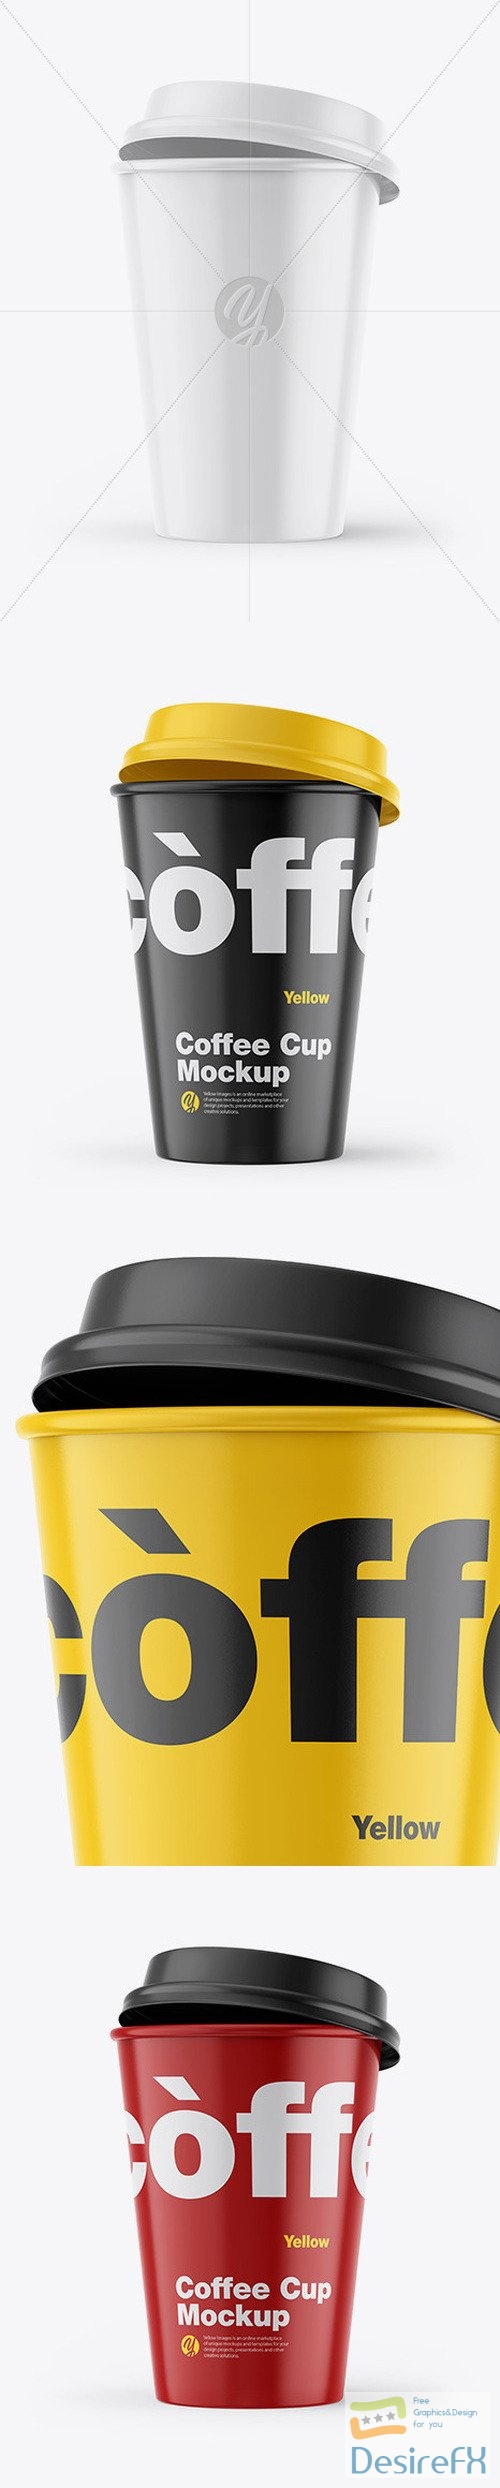 Glossy Coffee Cup Mockup 46293